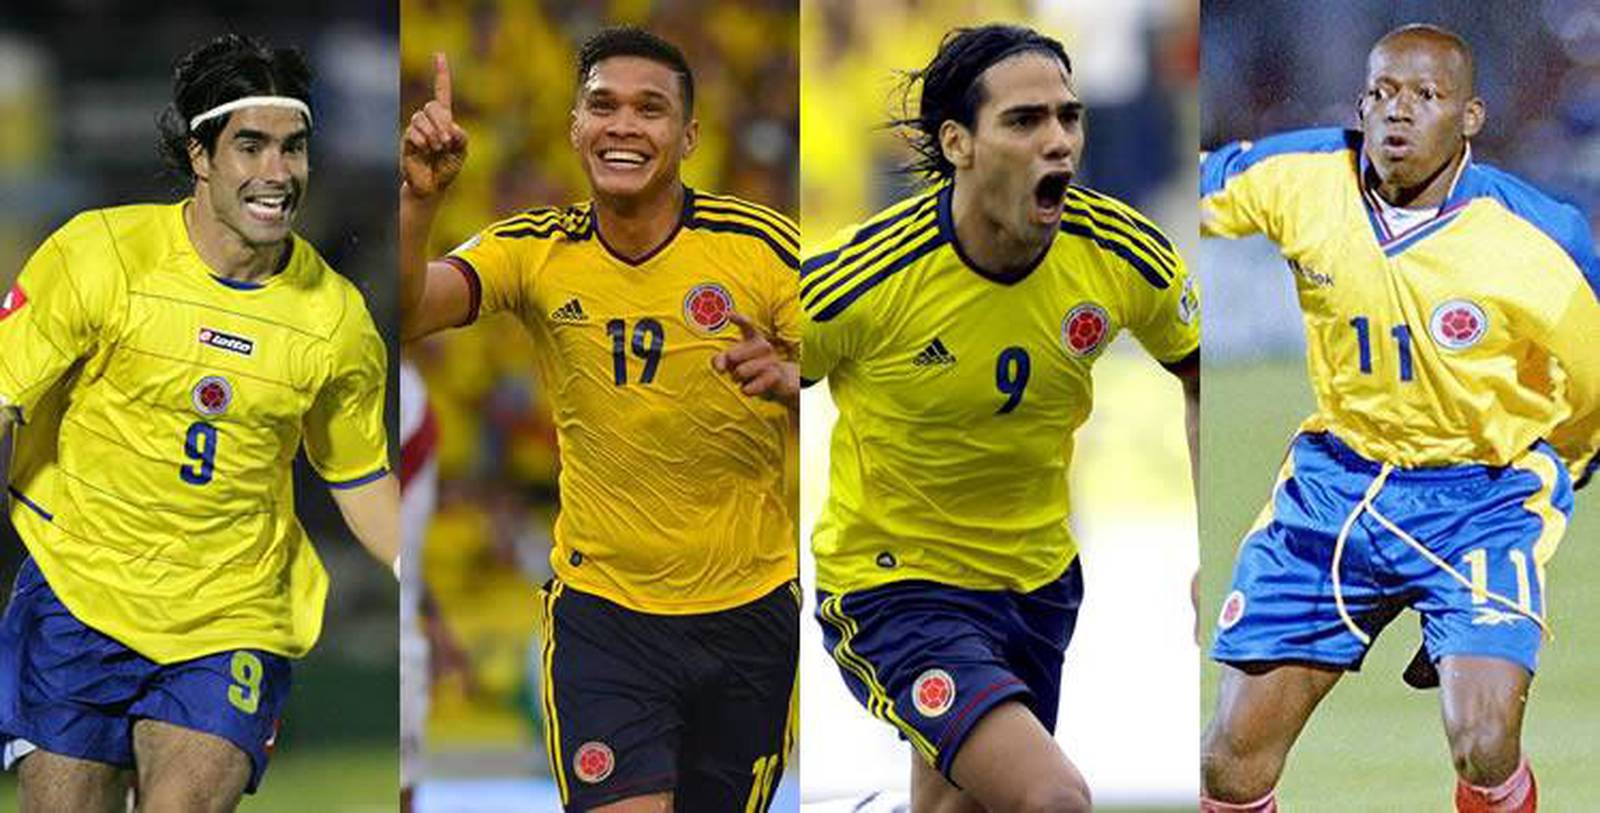 Los Jugadores De La Selección Colombia Con Más Goles En Eliminatorias Comutricolor 